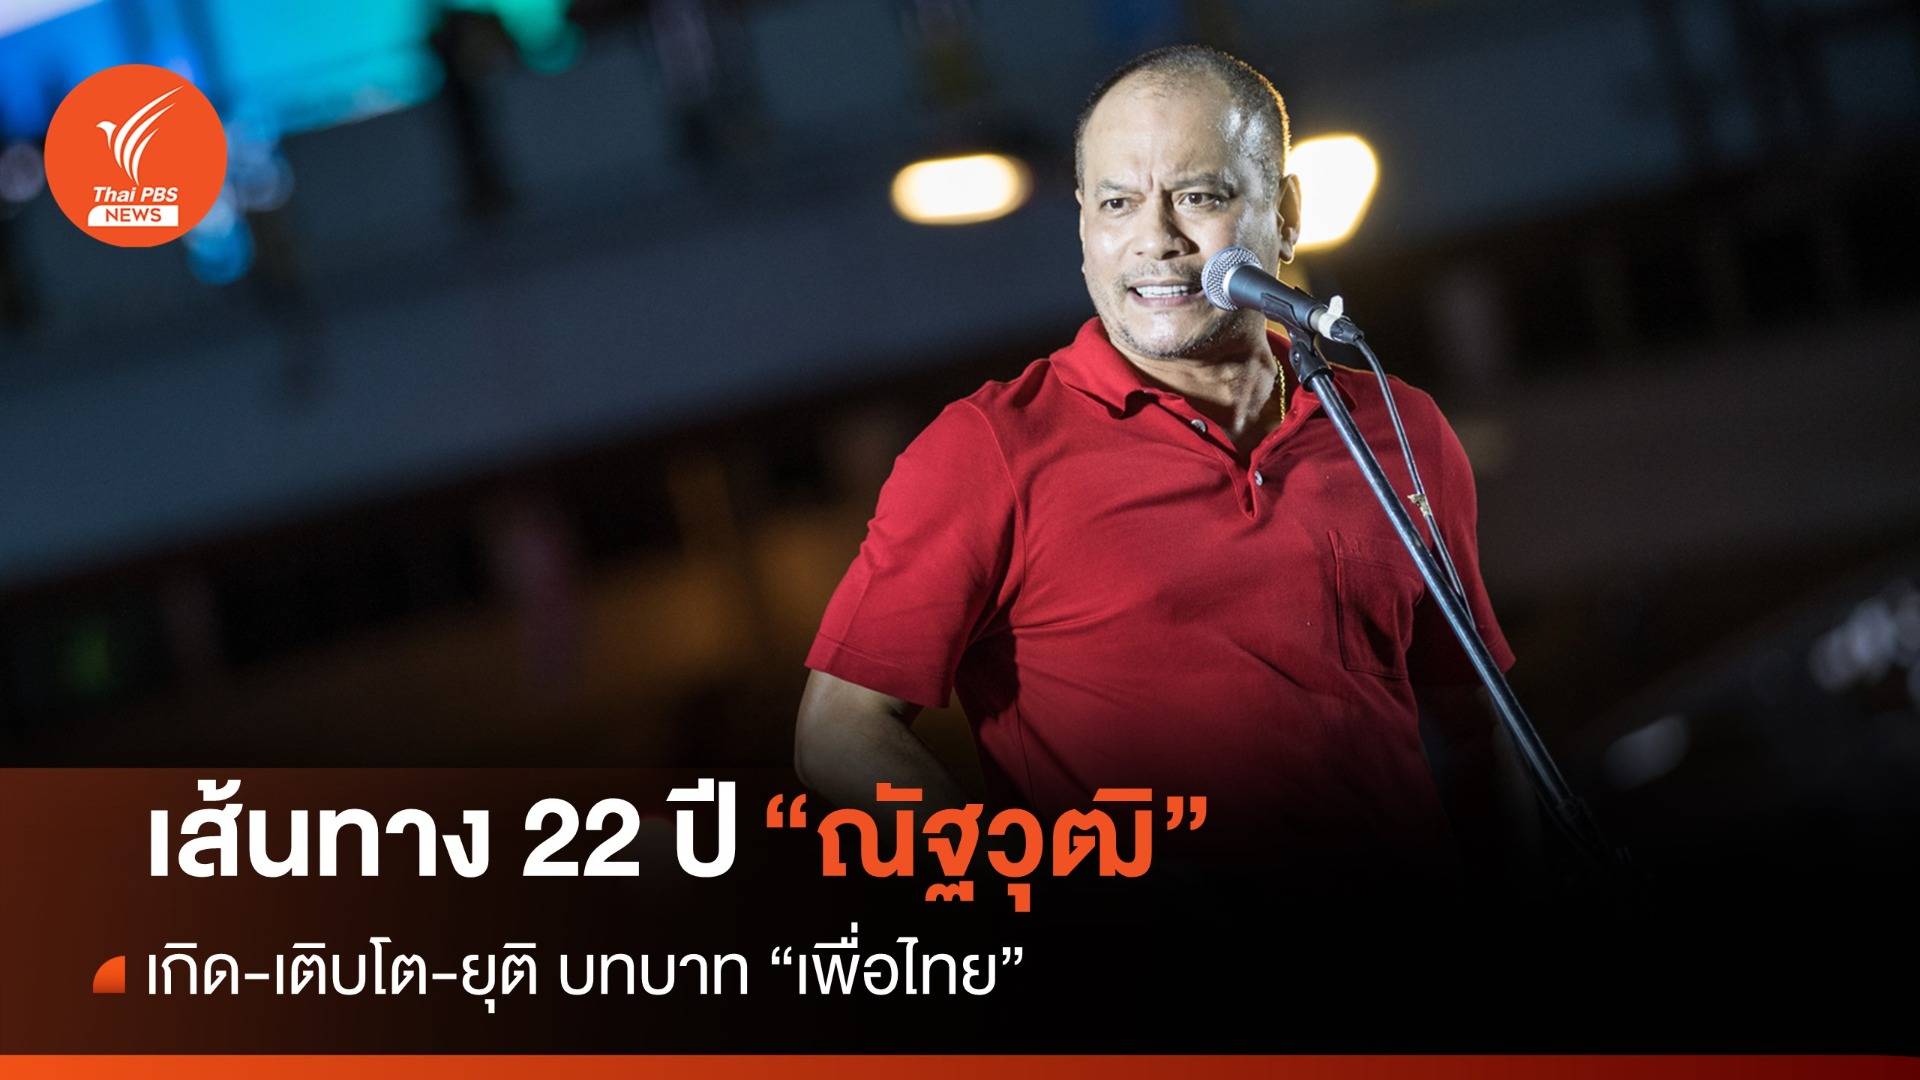 เส้นทาง 22 ปี "ณัฐวุฒิ" เกิด-เติบโต-ยุติ บทบาท "เพื่อไทย" 